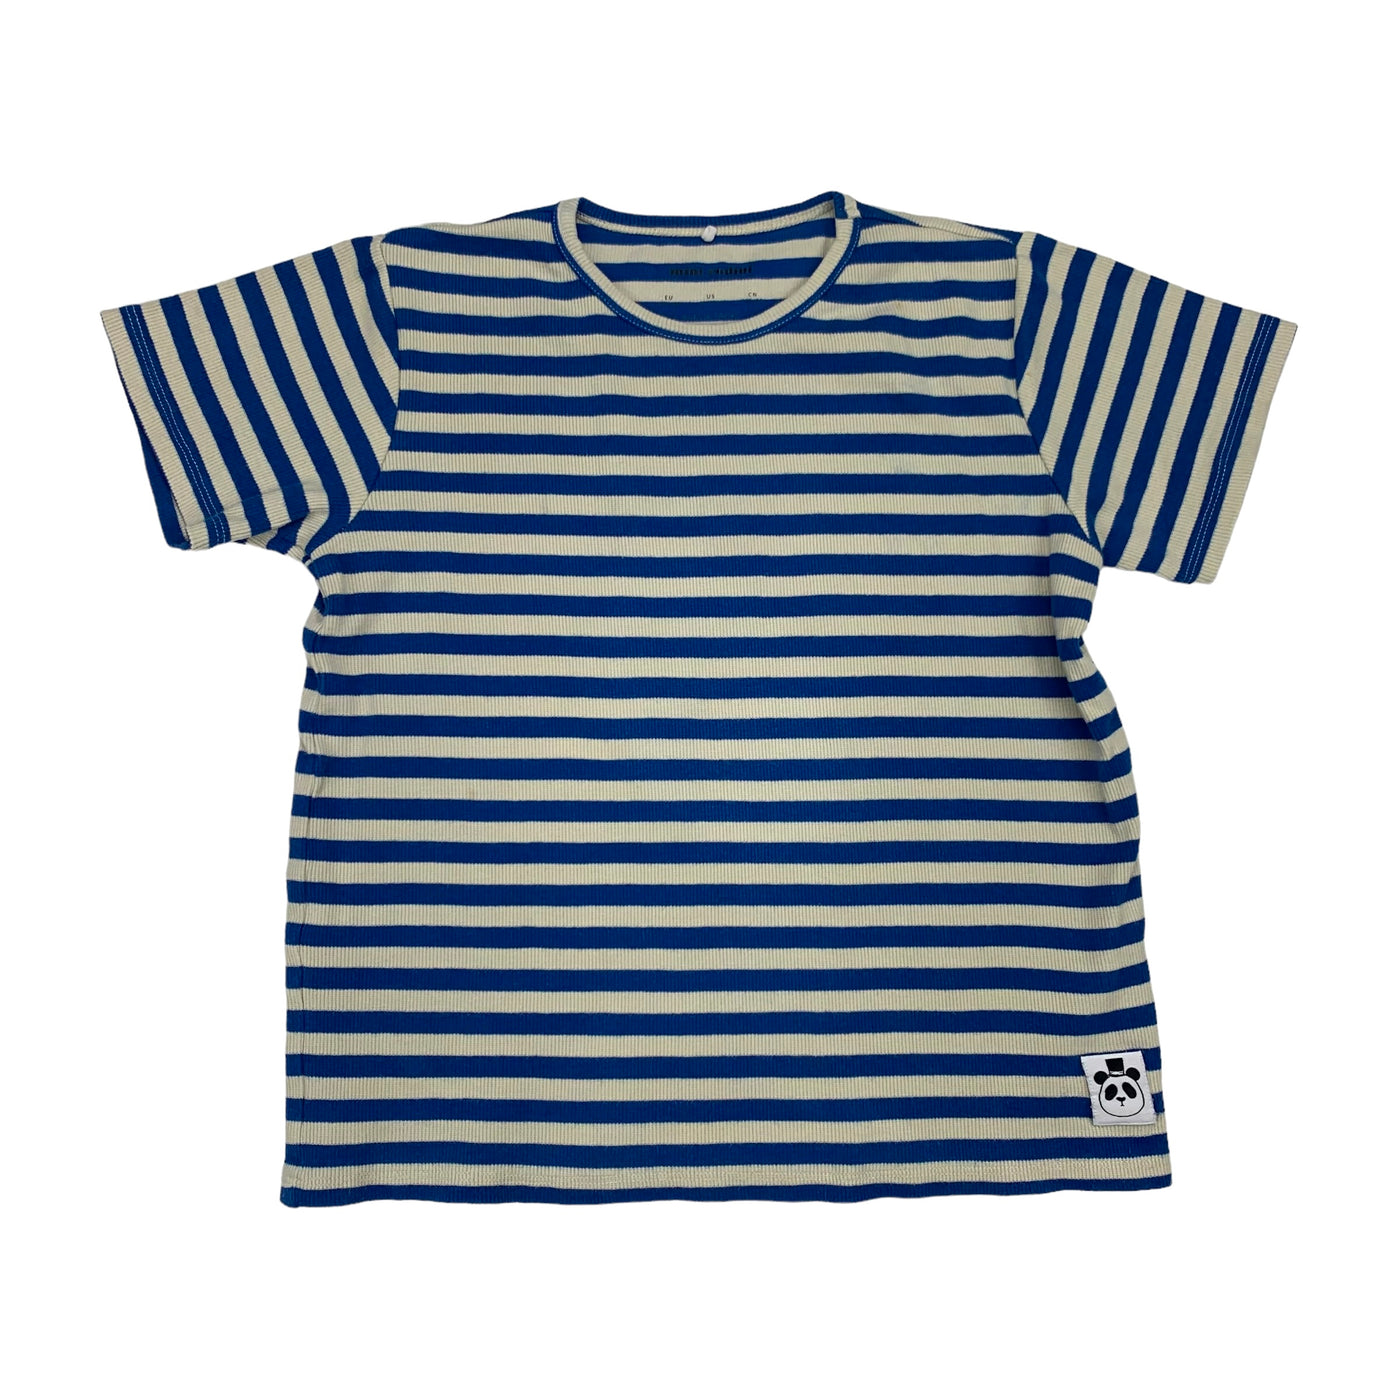 Mini rodini T-shirt rib blue white stripe size 10 - 11 years